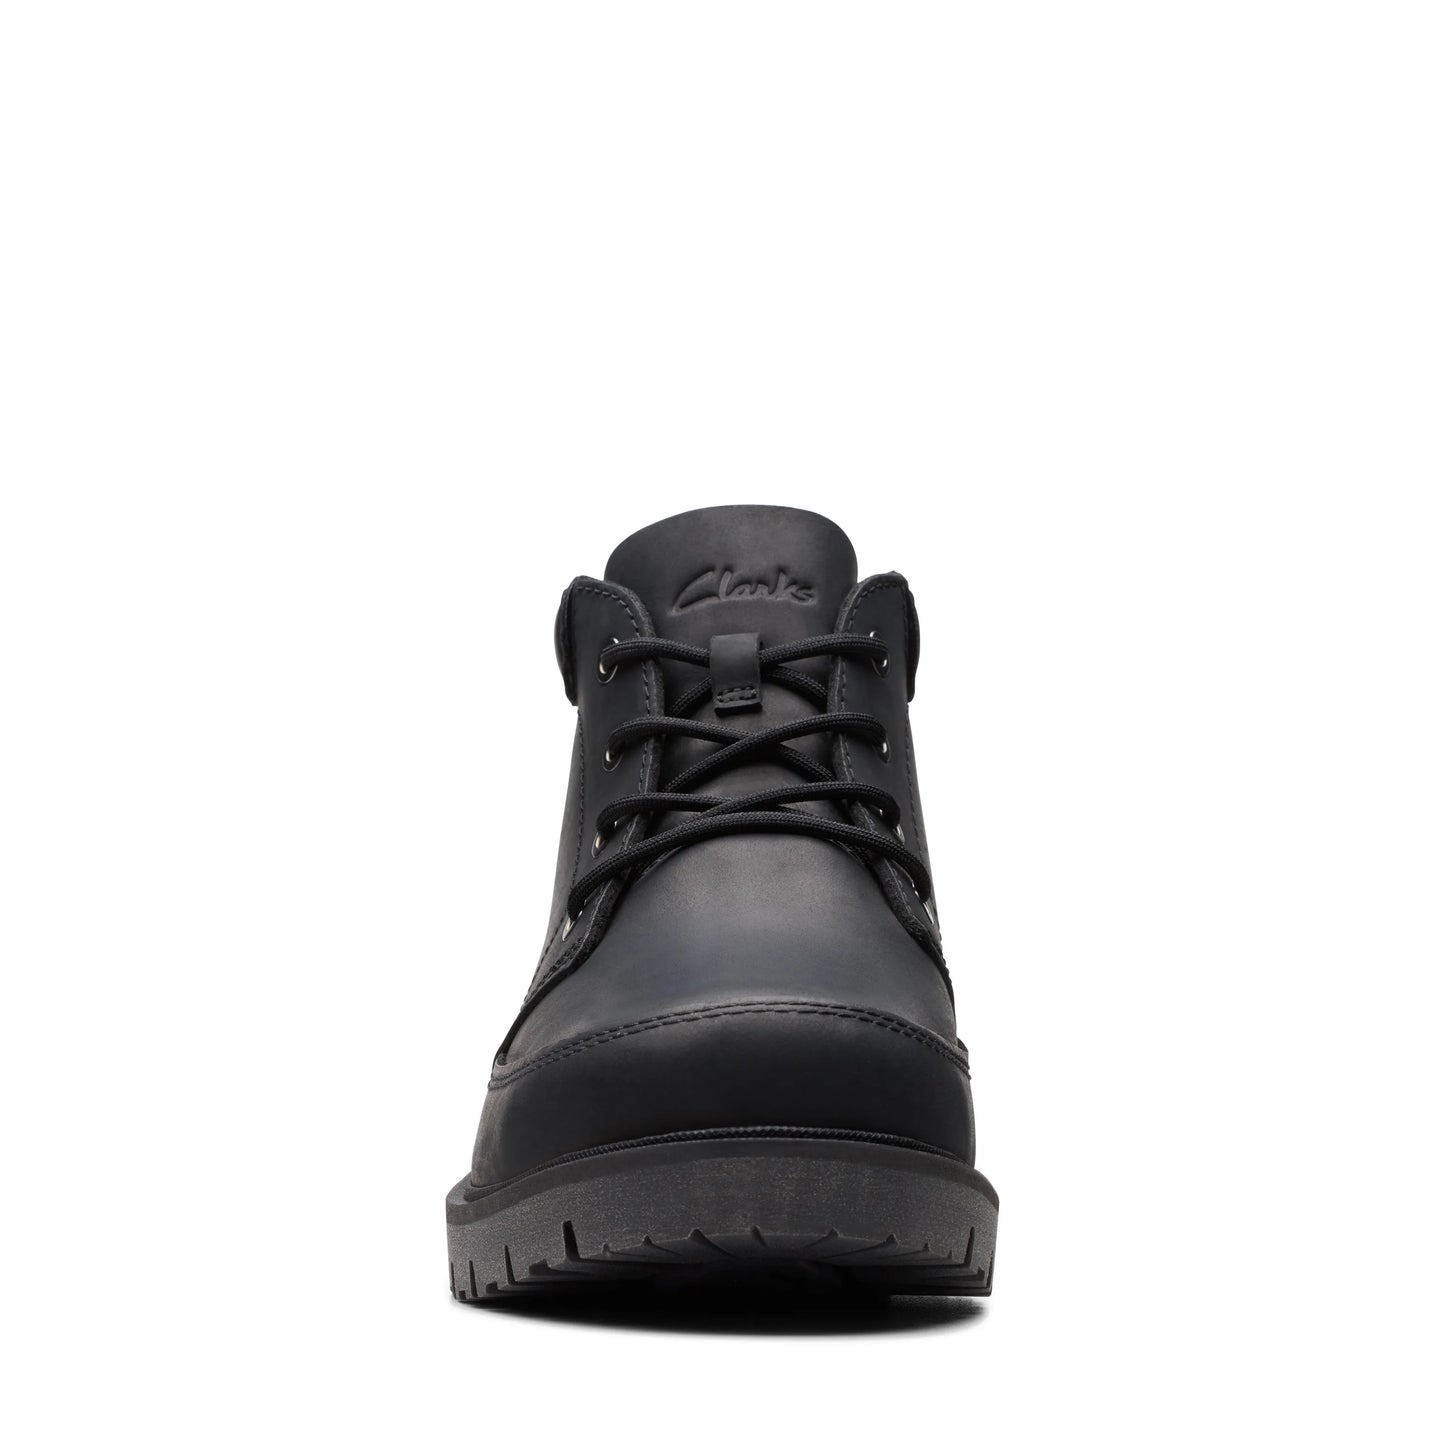 CLARKS | 男士脚踝靴 | ROSSDALE MID BLACK LEATHER | 黑色的